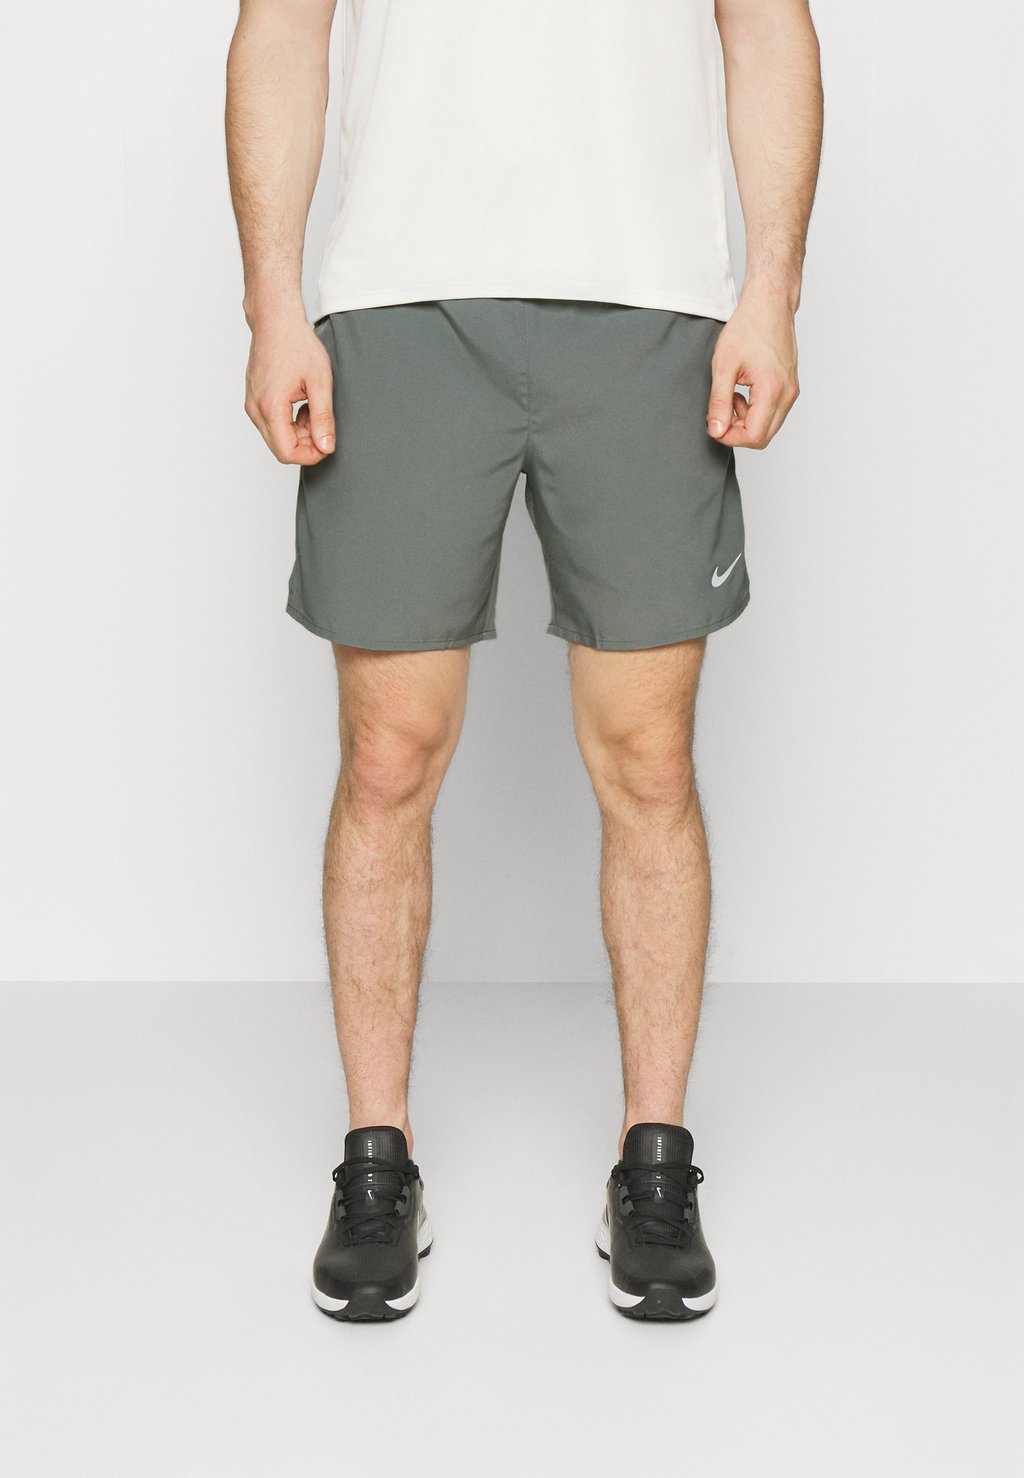 Спортивные шорты CHALLENGER SHORT Nike, дымчато-серый/черный/серебристый